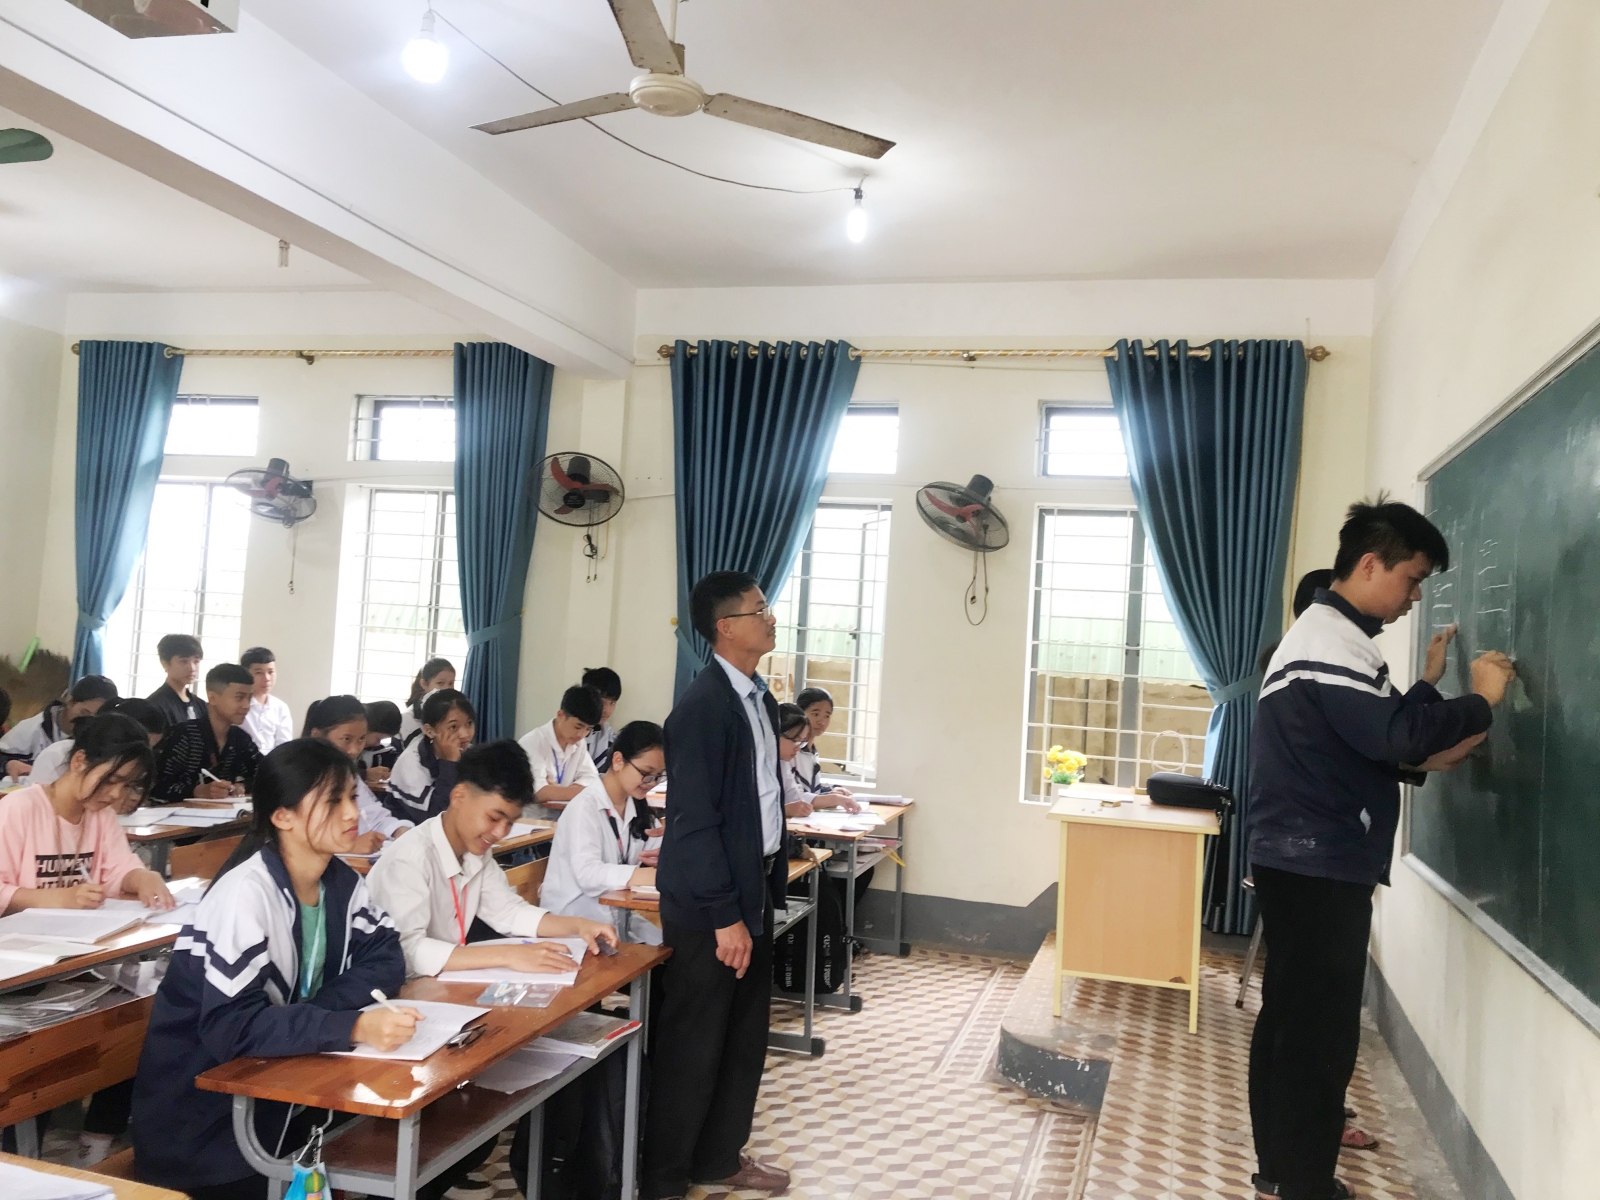 7.122 học sinh Hà Tĩnh đăng ký nguyện vọng thi để xét tốt nghiệp THPT